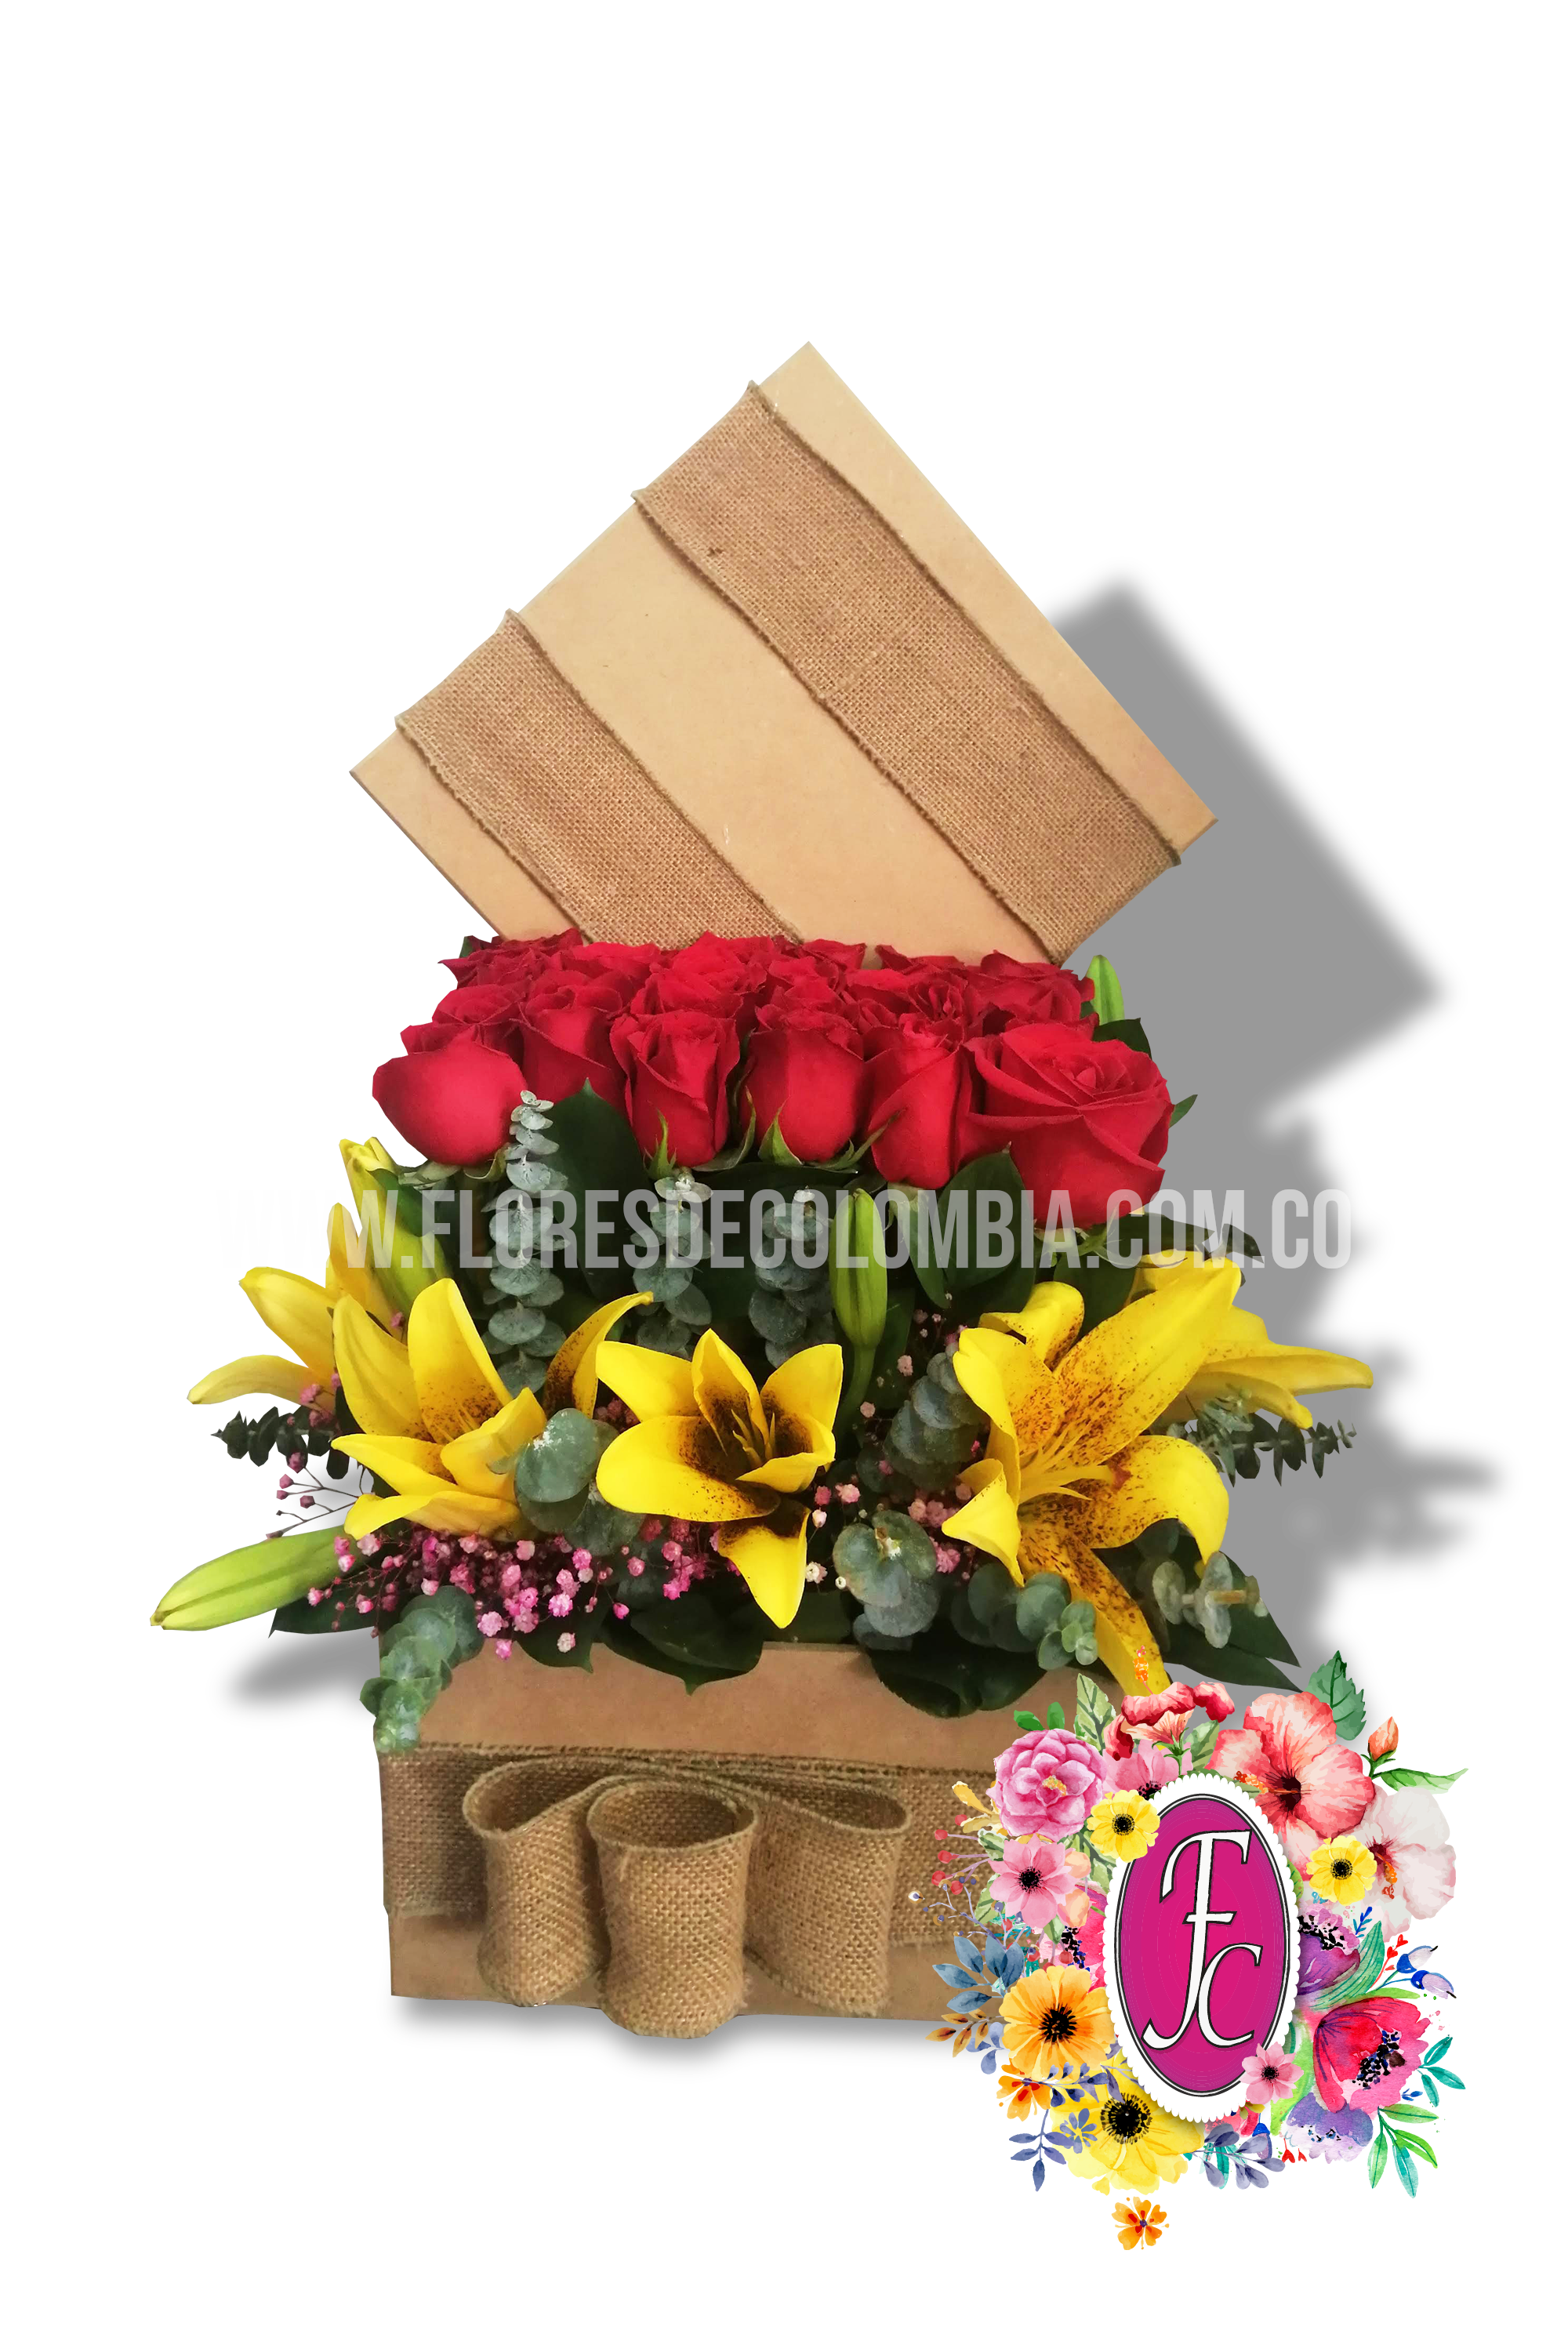 Caja floral de madera con rosas y lirios │ Flores de Colombia